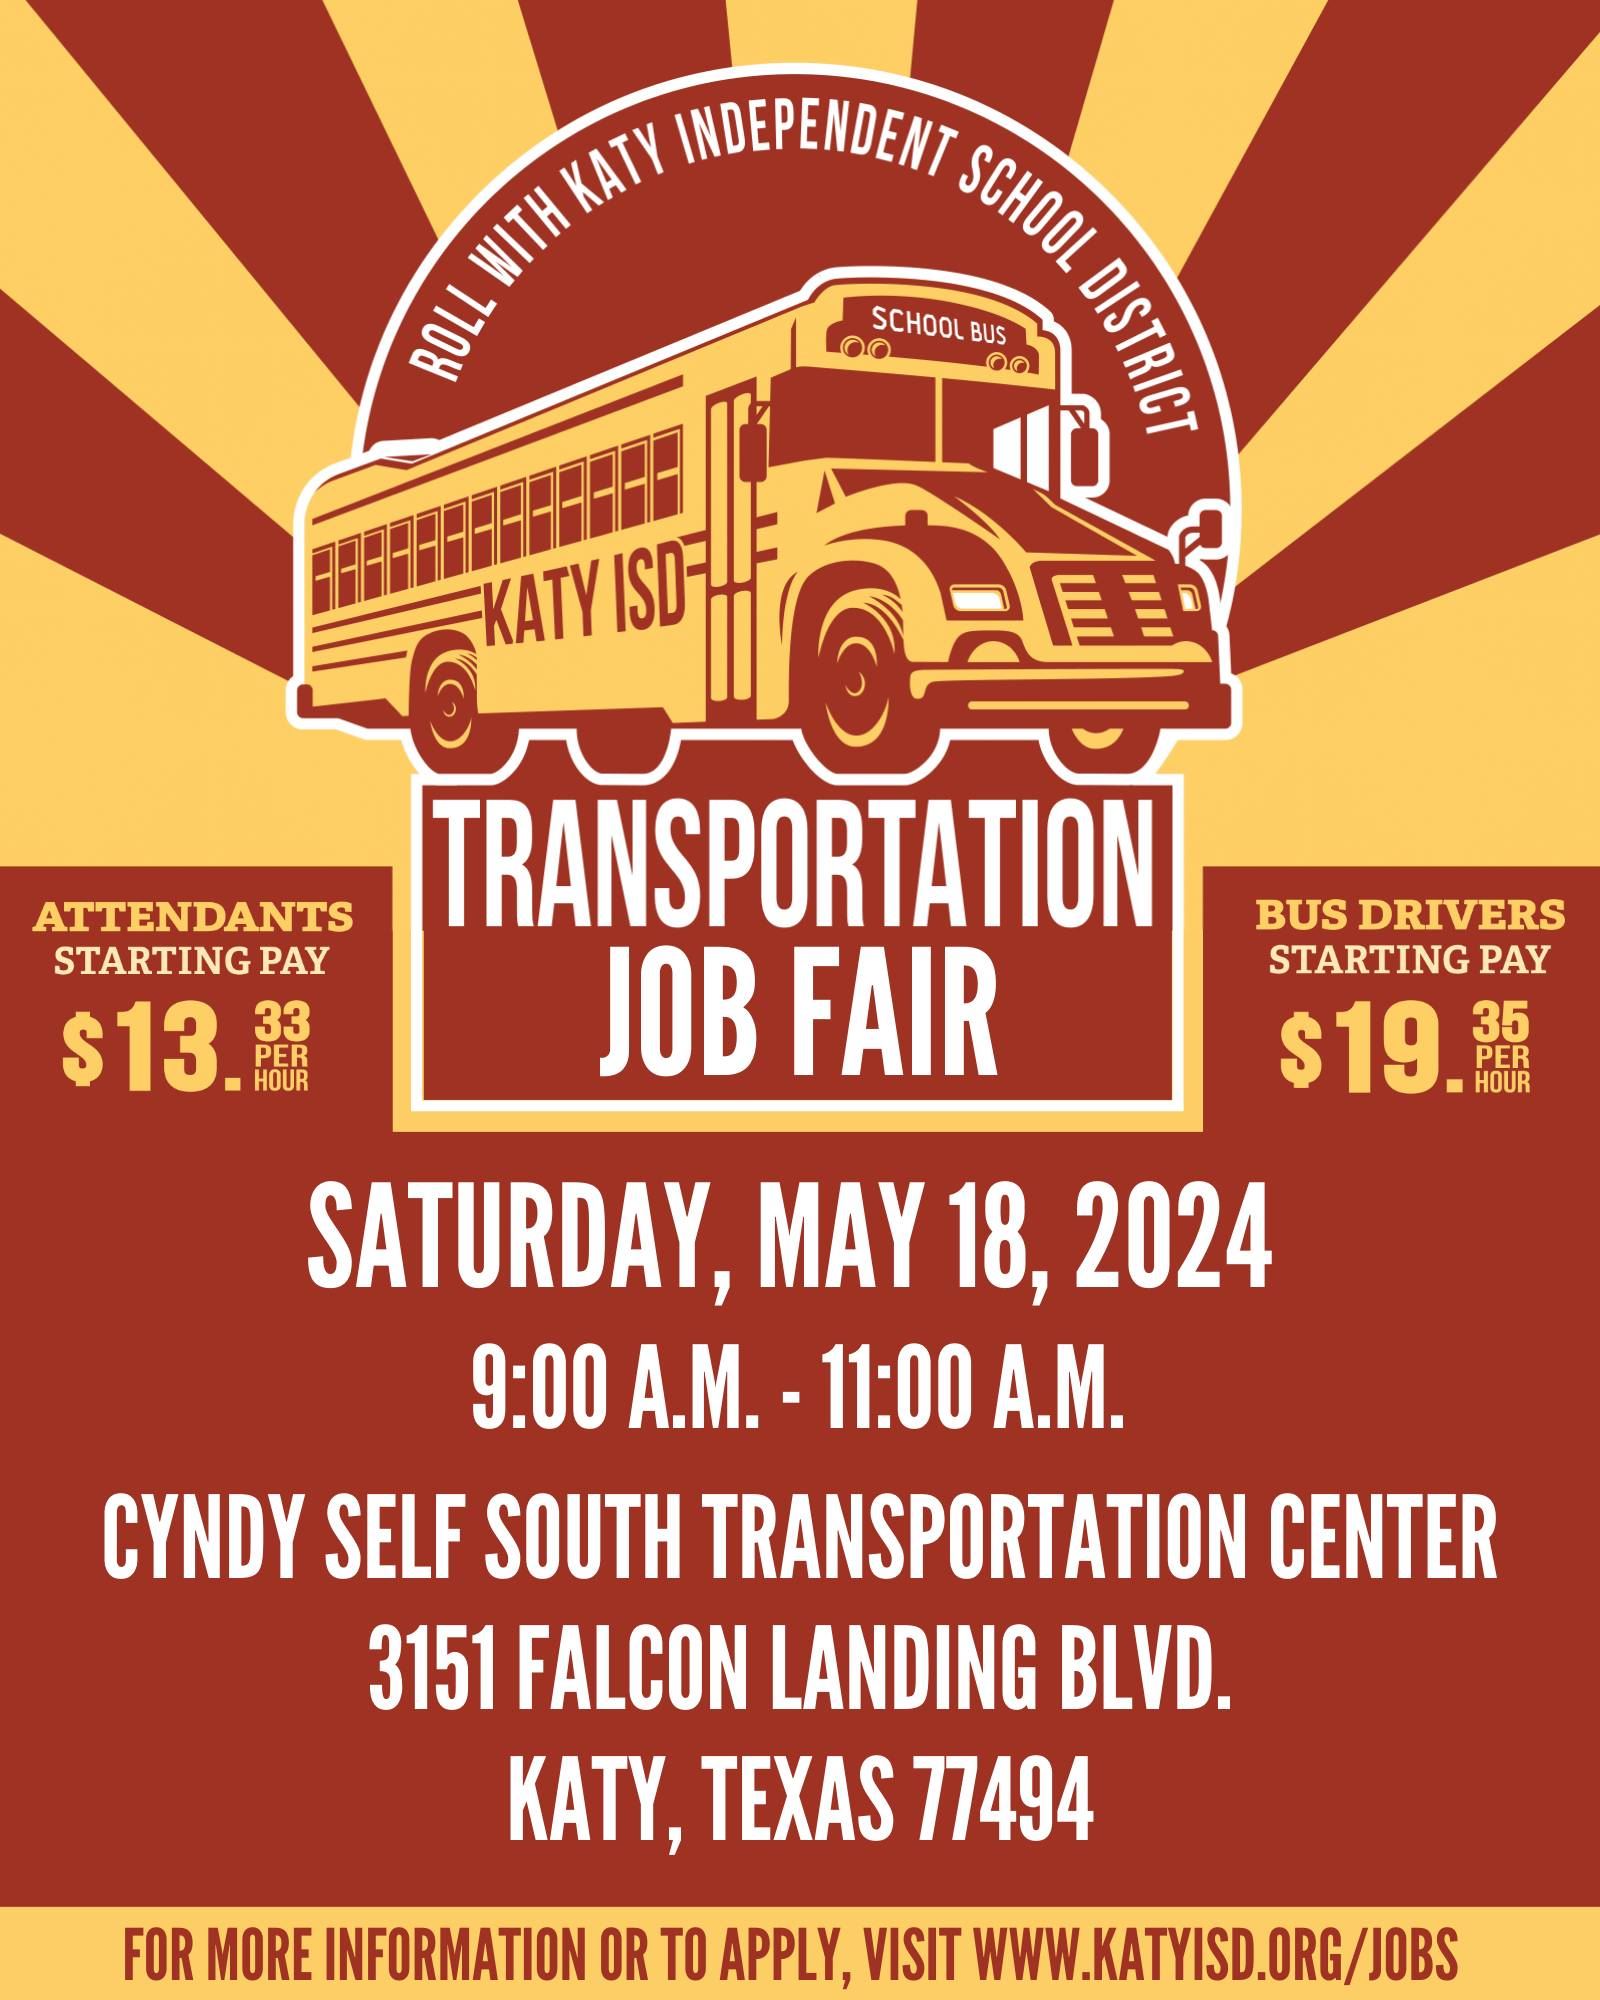 Transportation Job Fair flyer